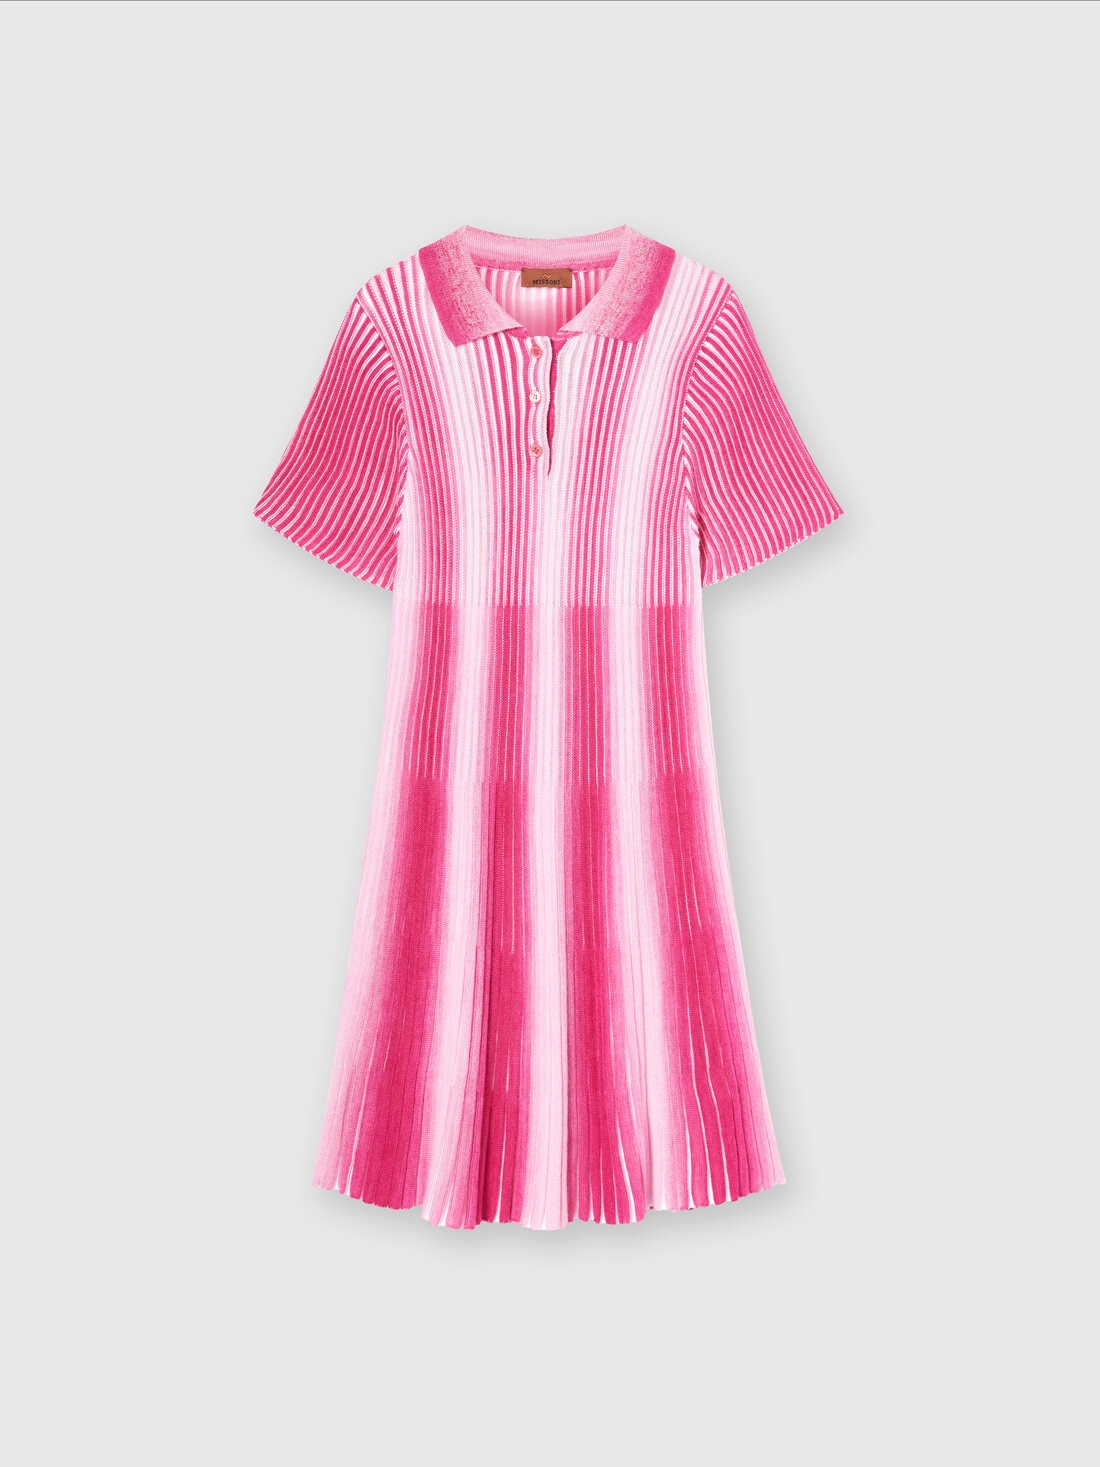 Midi dress in striped viscose knit, Pink   - KS24SG01BV00FVS30DI - 0